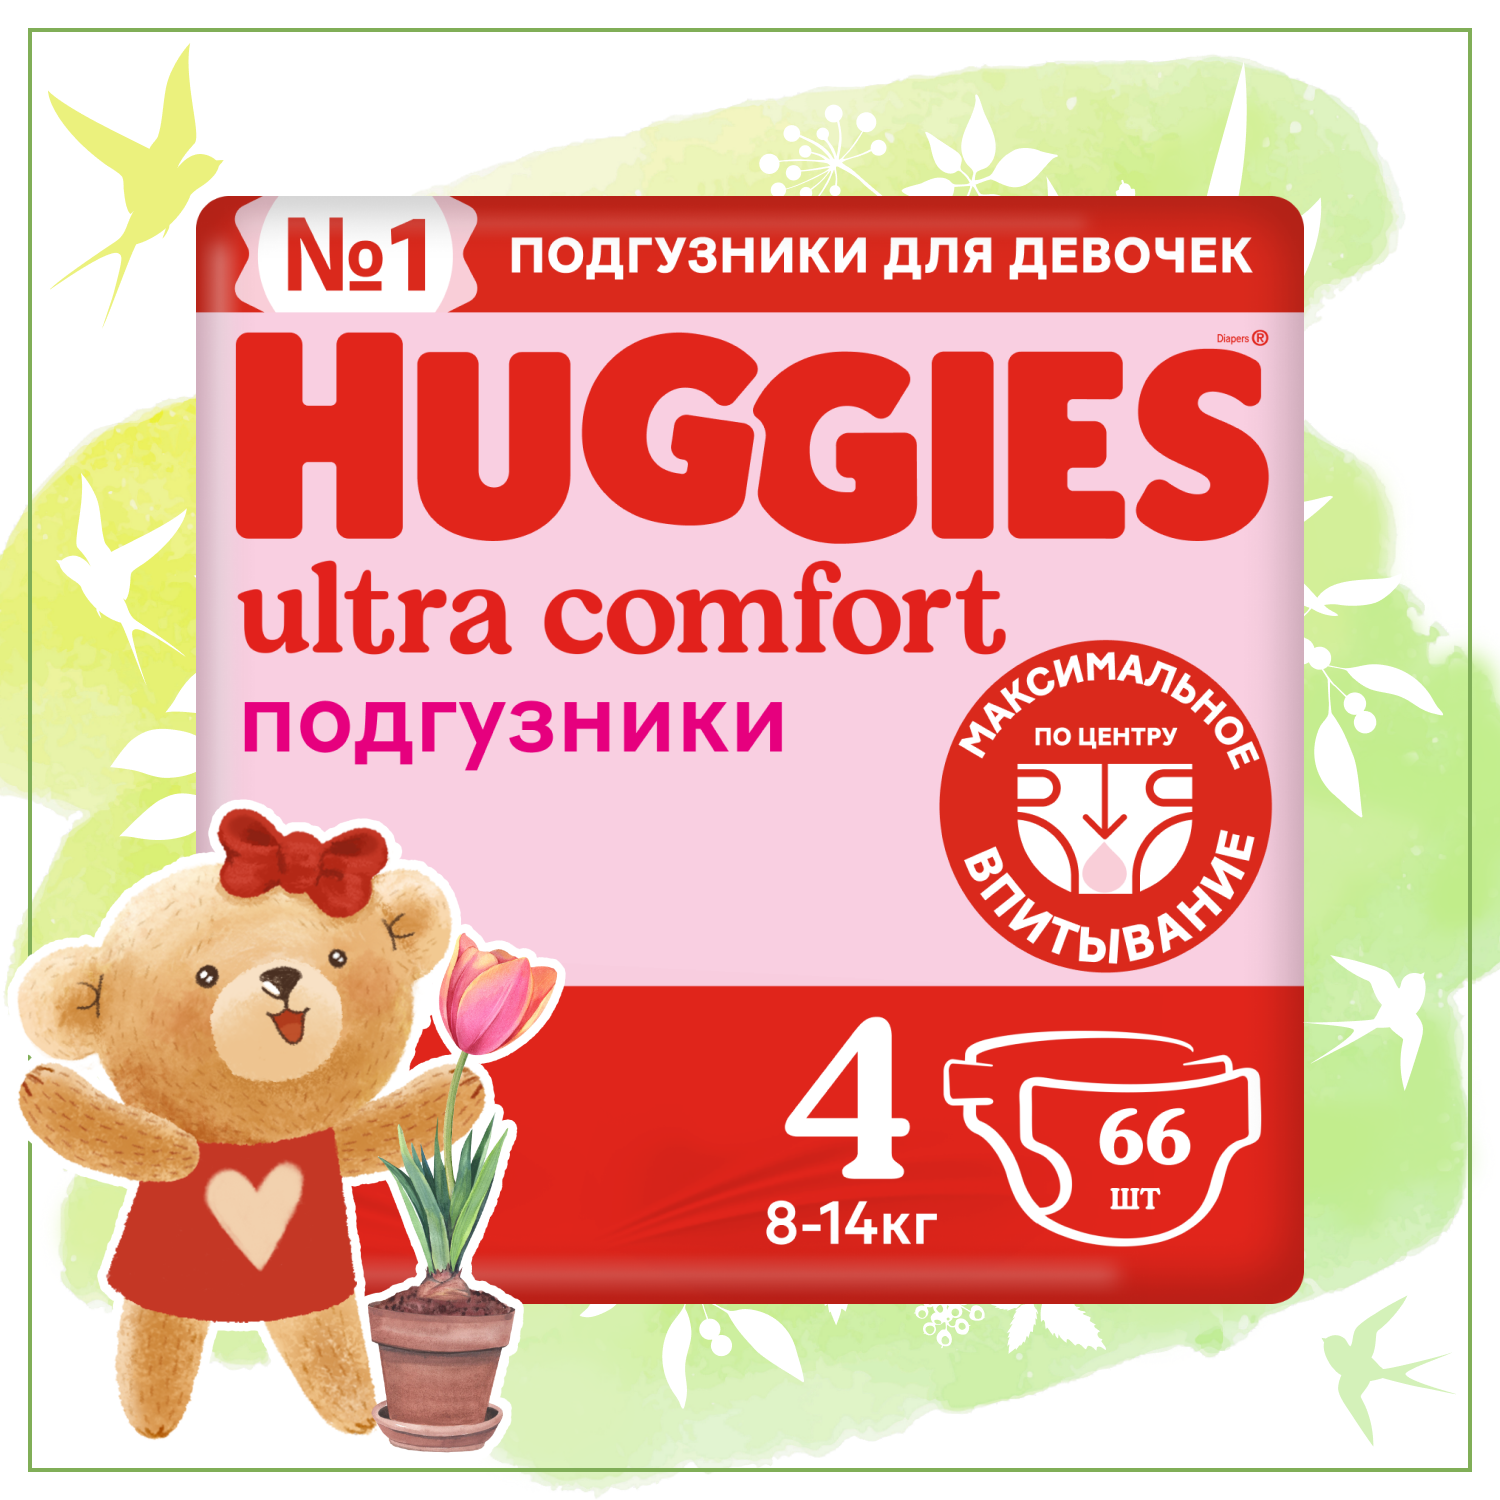 Подгузники для девочек Huggies Ultra Comfort 4 8-14кг 66шт - фото 1